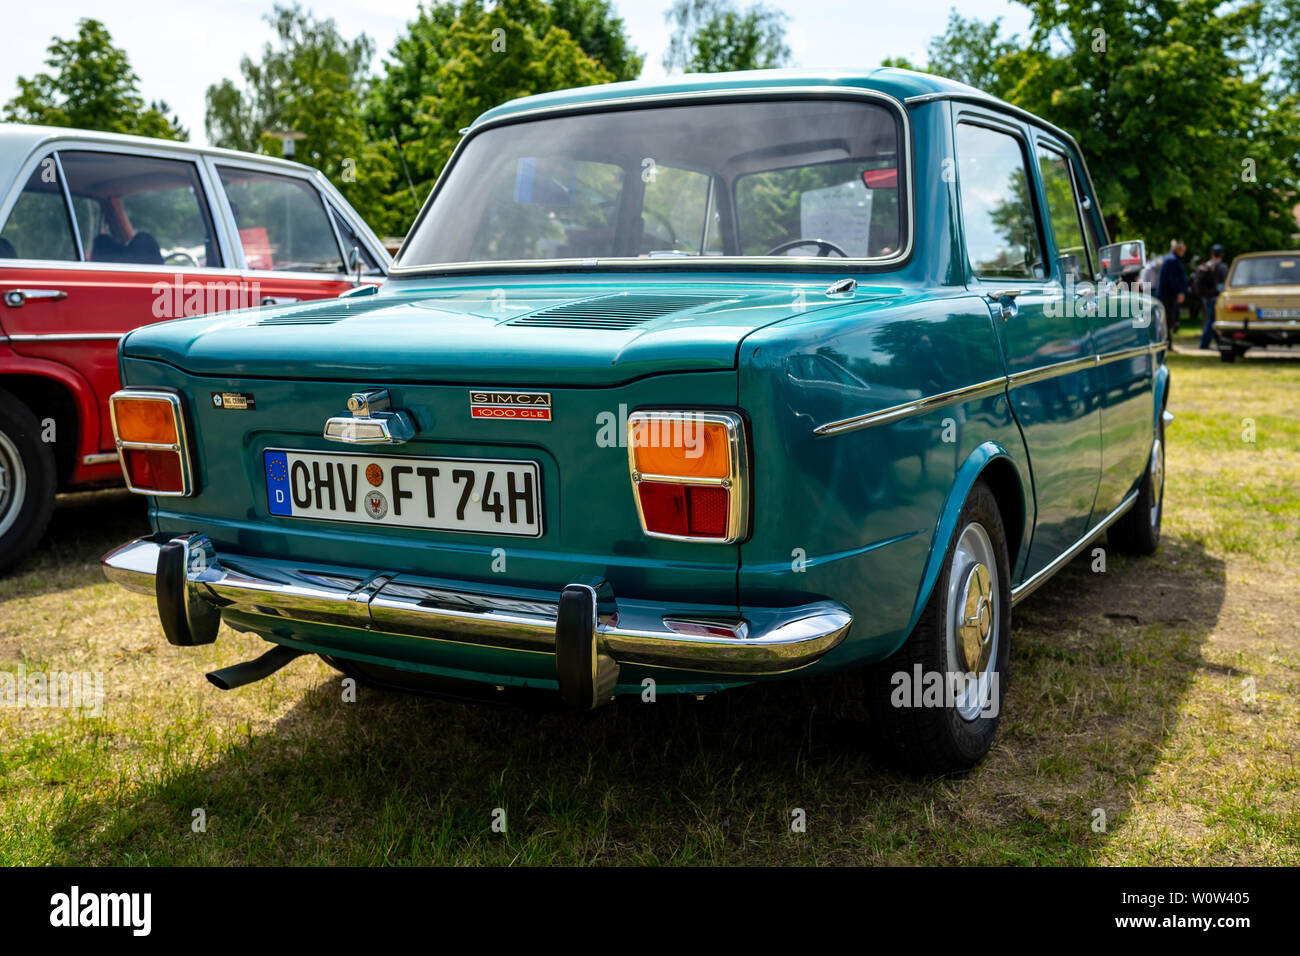 PAAREN IM GLIEN, Deutschland - 19. MAI 2018: Kleines Auto Simca 1000 GLE, 1974. Ansicht von hinten. Oldtimer-show 2018 sterben. Stockfoto